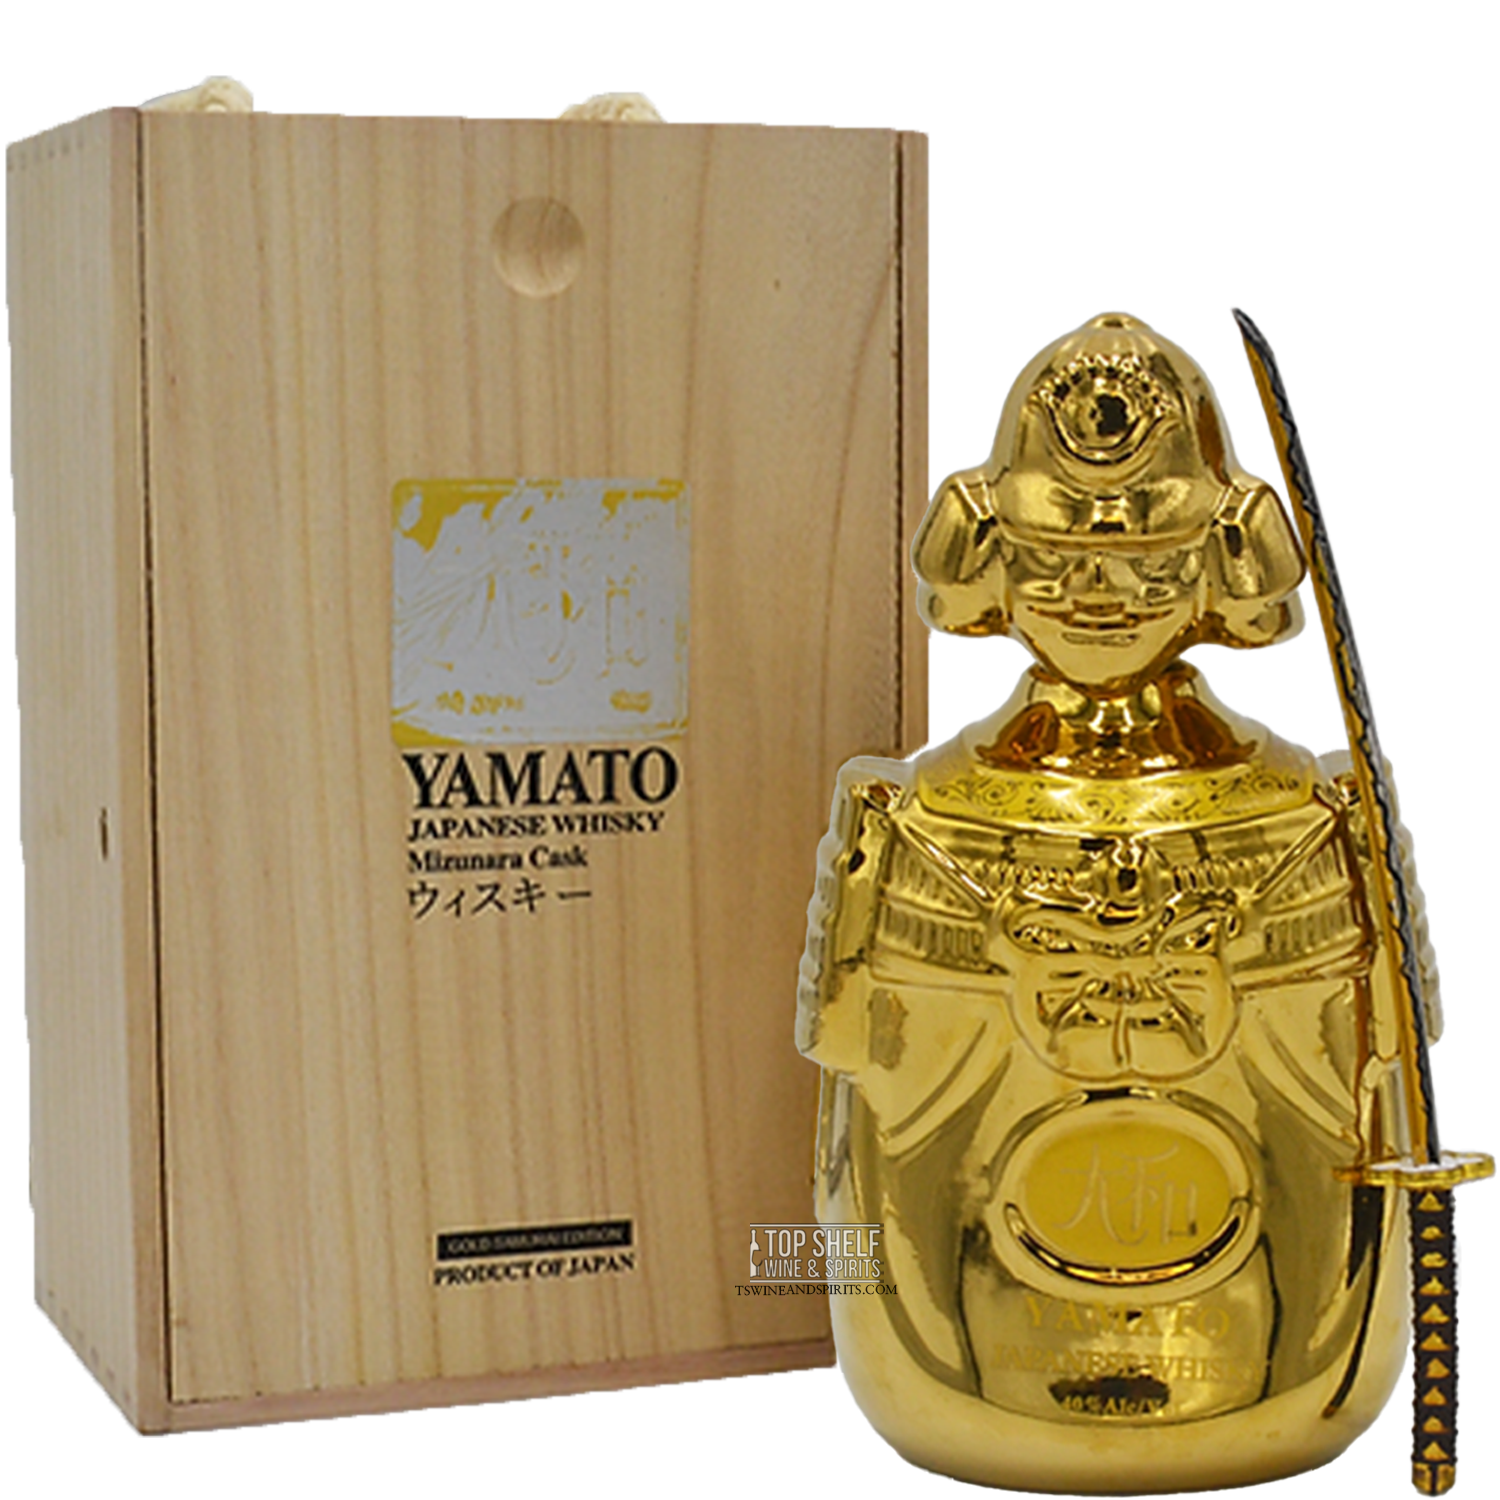 Yamato Mizunara Cask Japanese Whisky (Gold Samurai Edition)